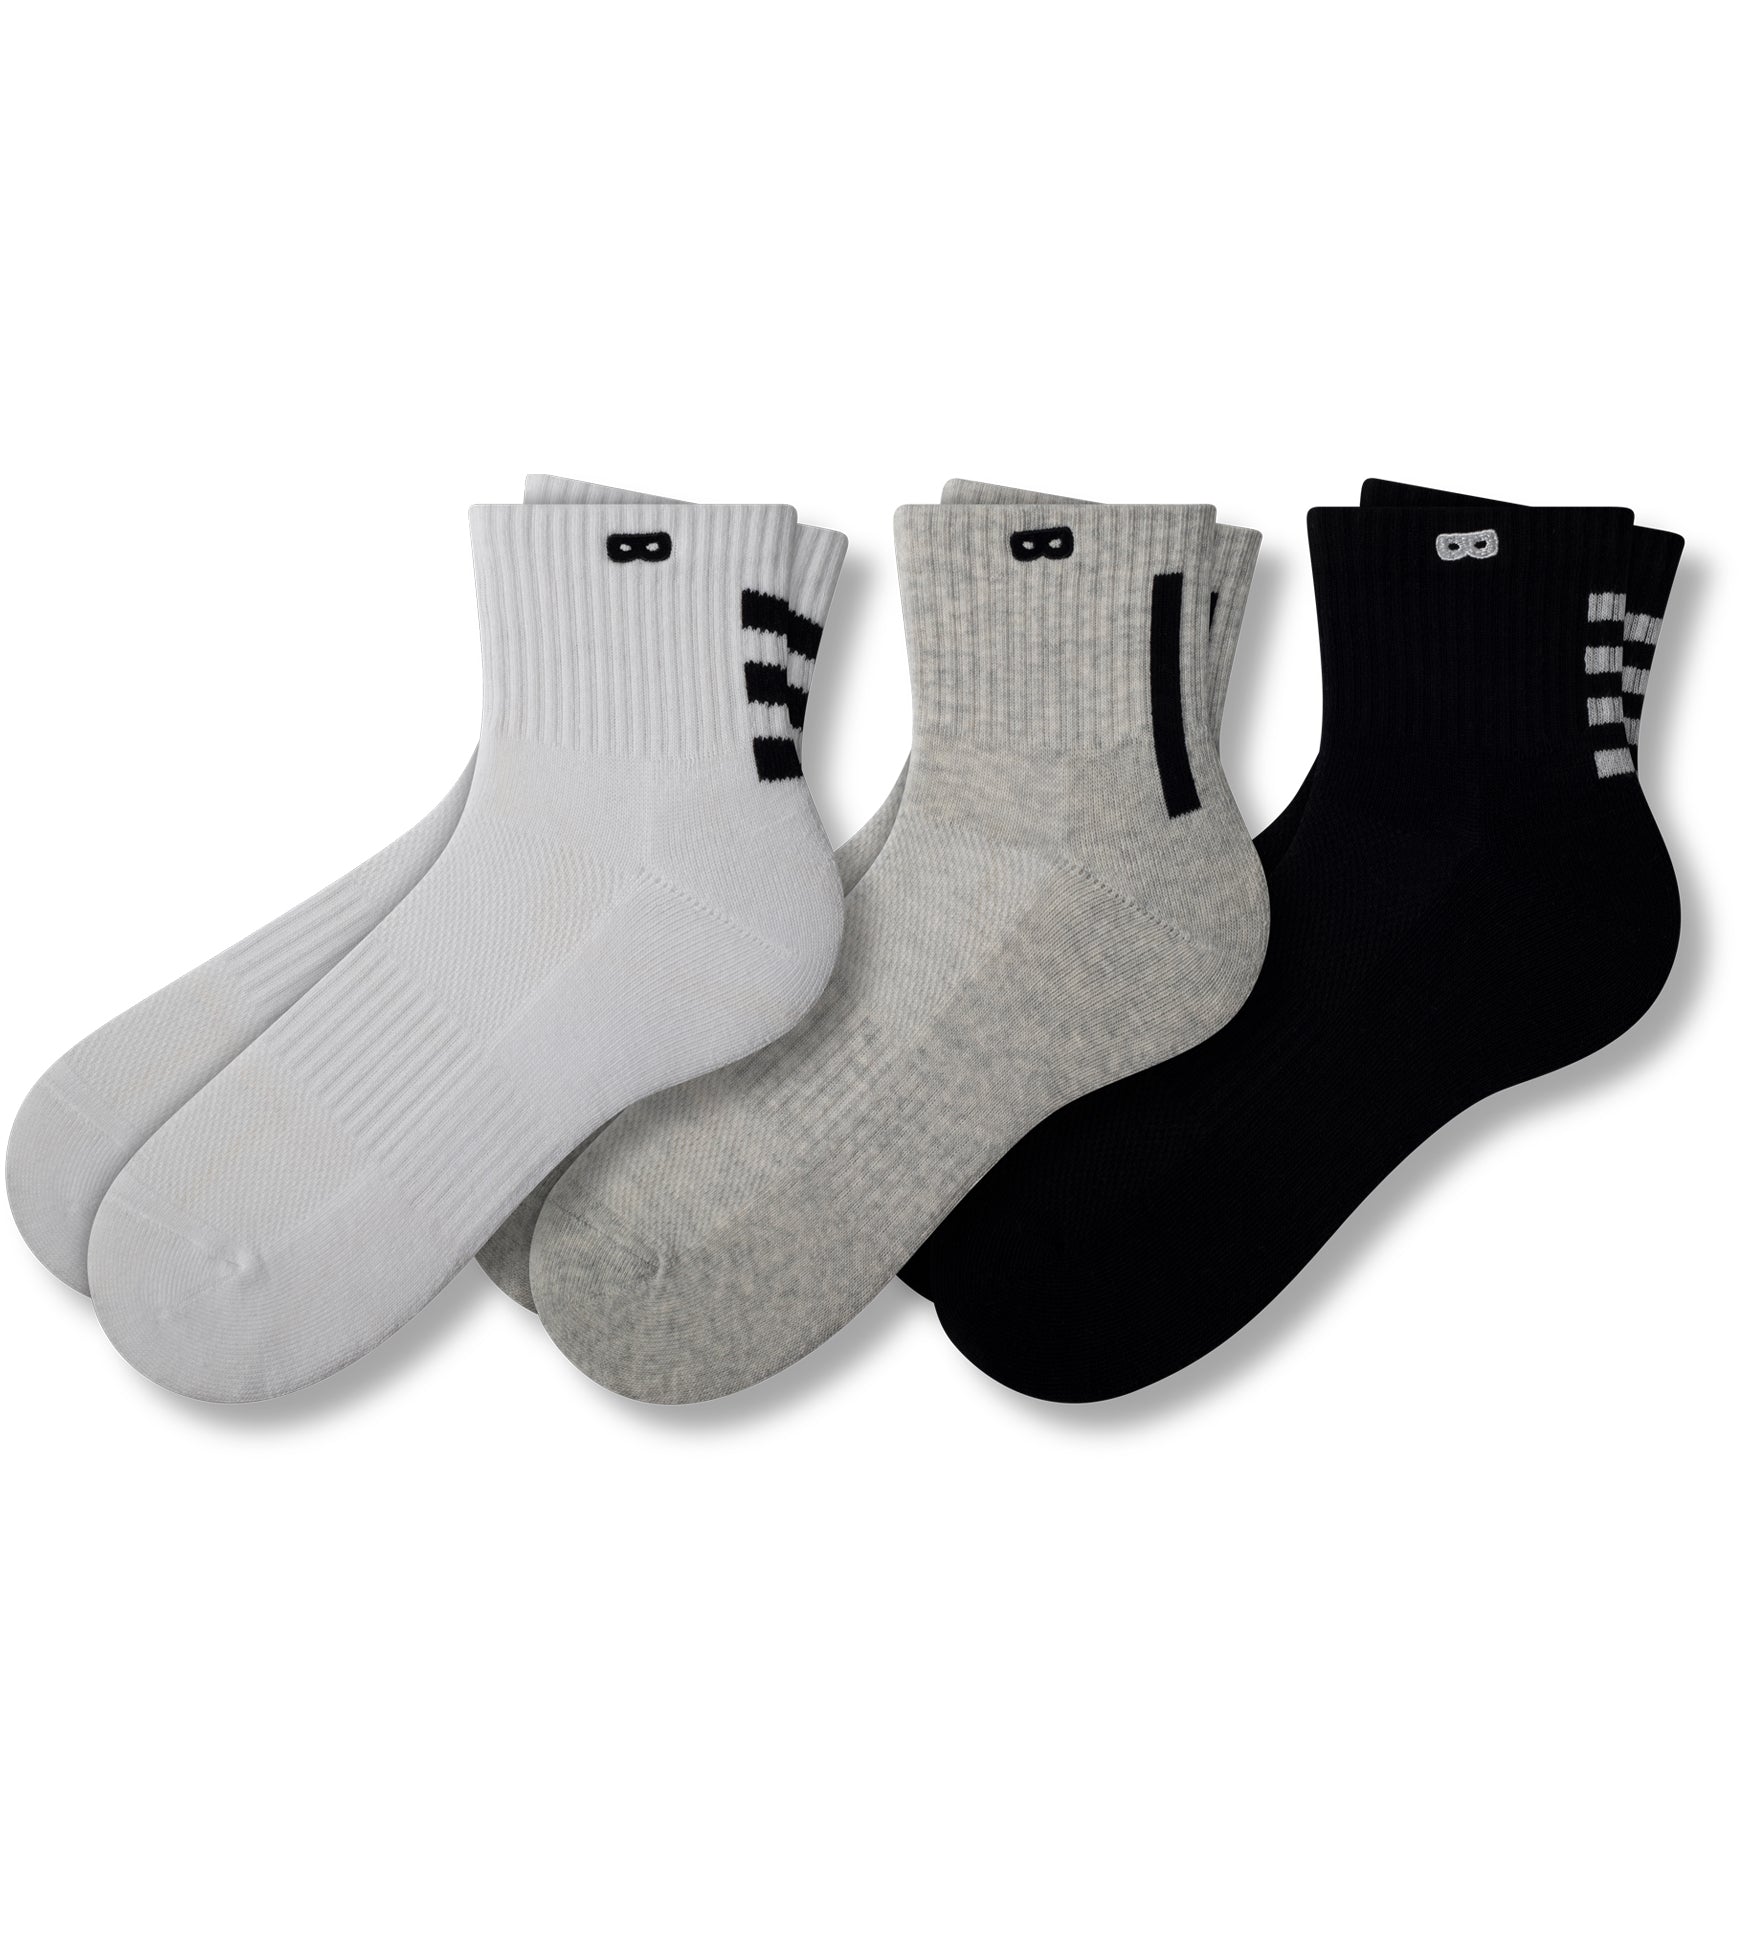 Men's Crew Socks, Ankle Socks, No Show Socks & Boxer Briefs